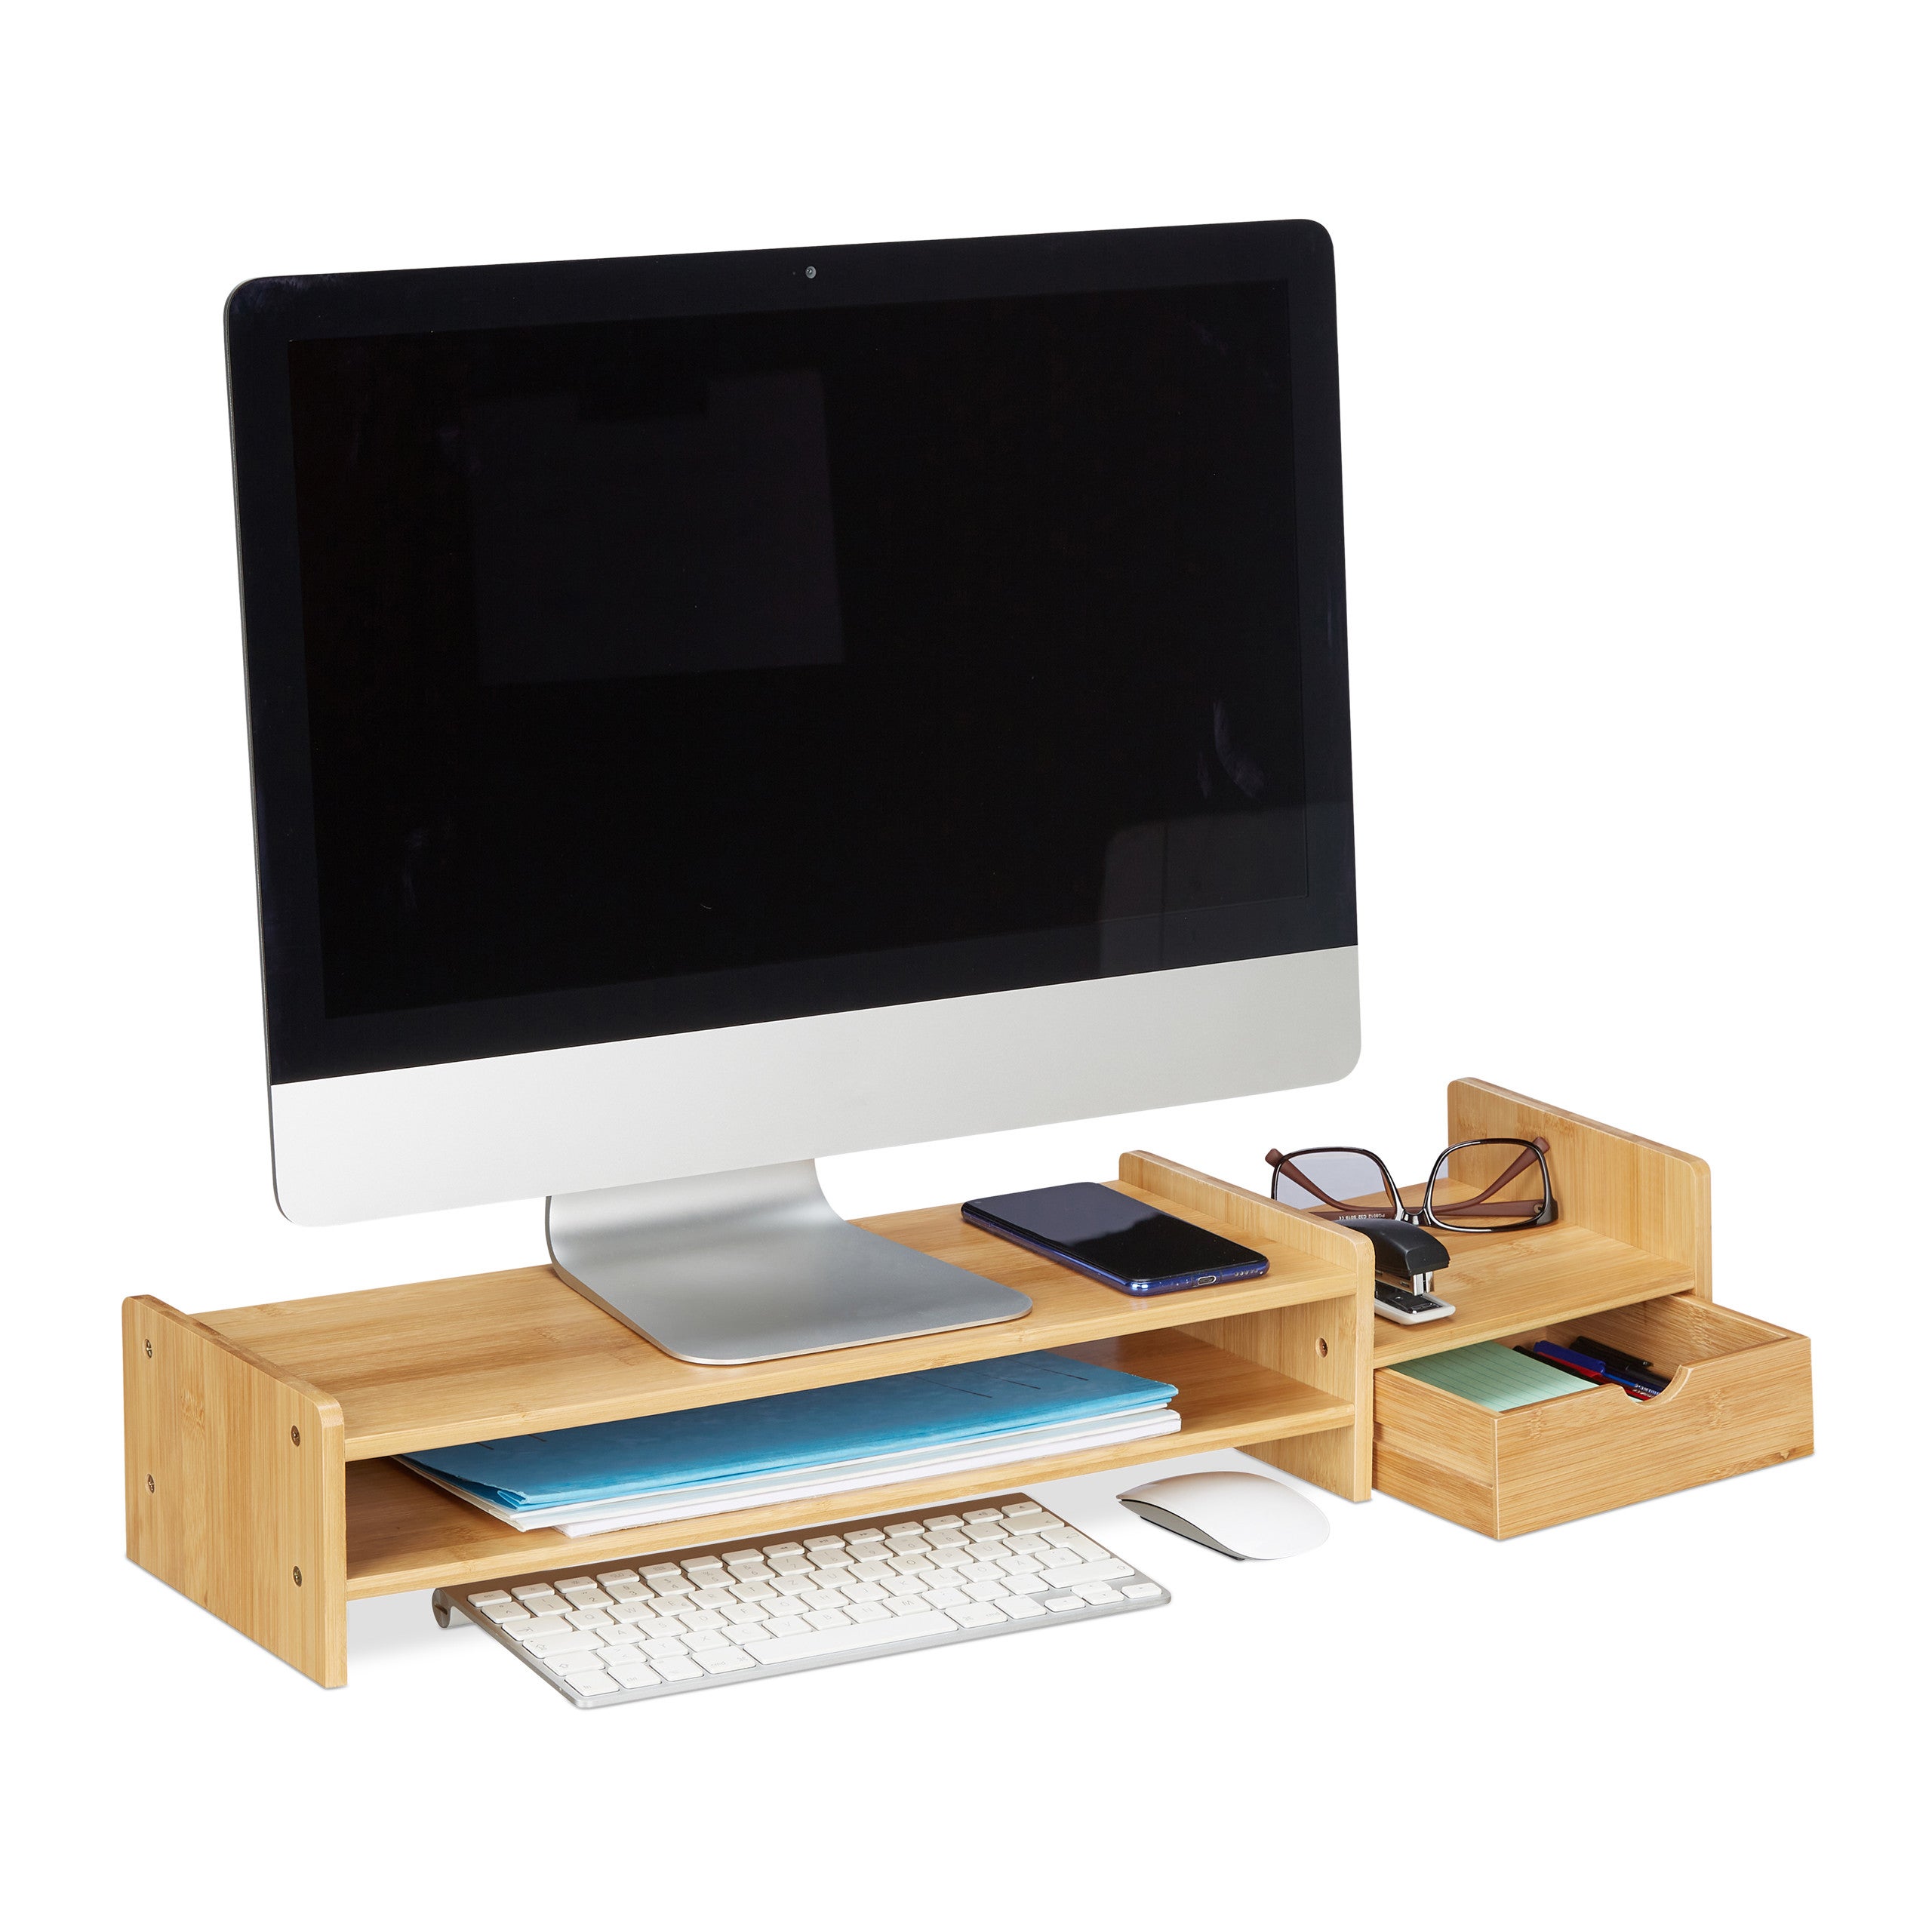 Supporto monitor doppio 2 computer rialzo pc scrivania alzata schermo  ufficio